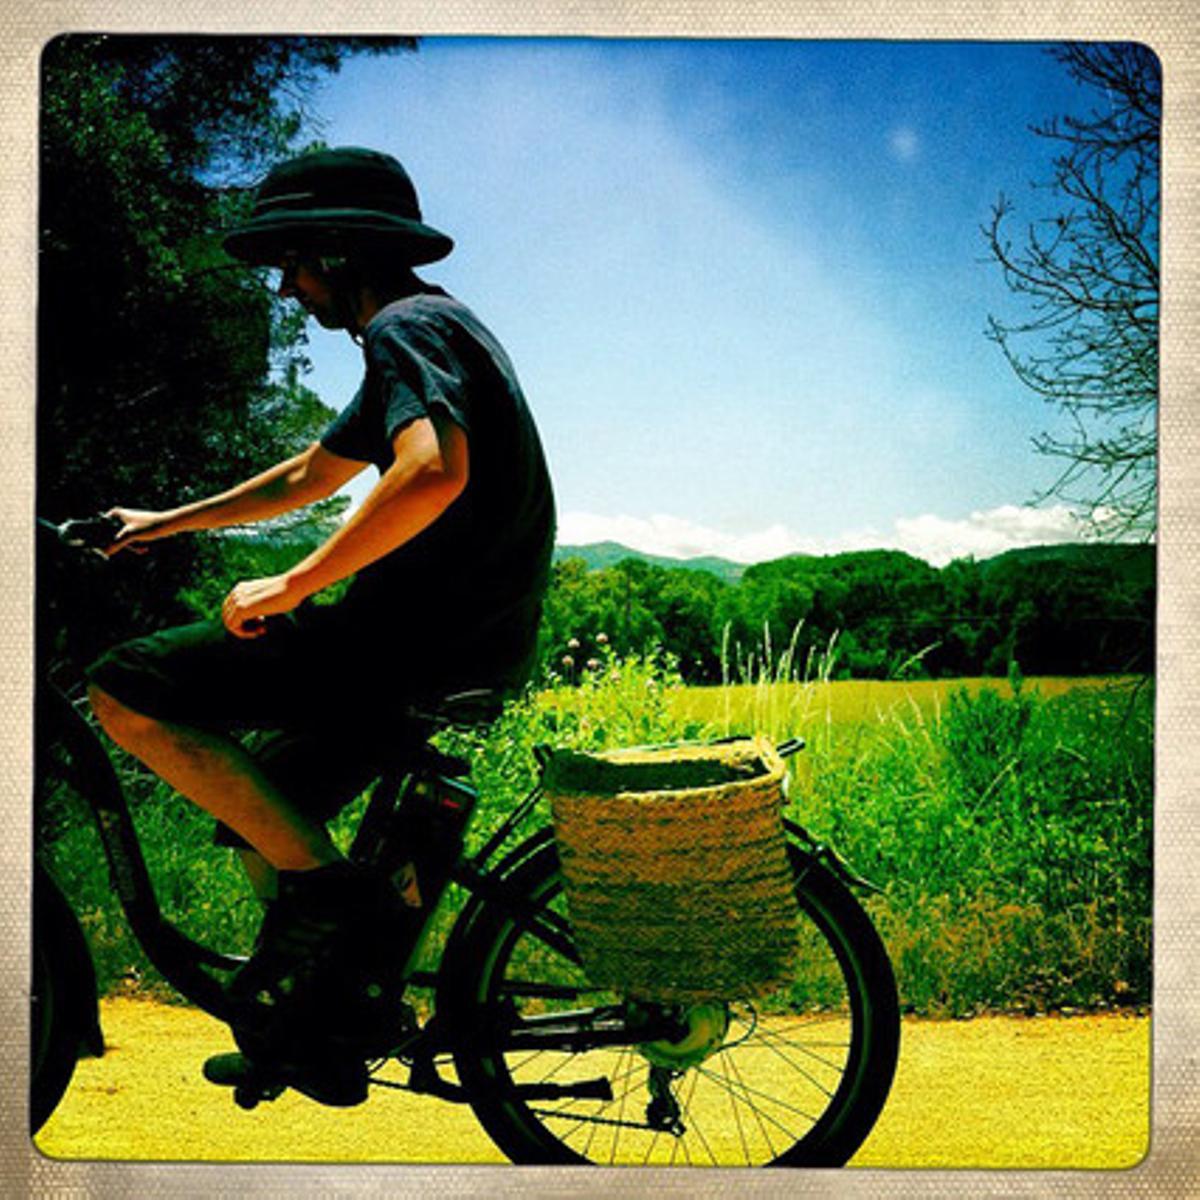 En bici en Cassà de la Selva a S’Agaró, de Philippe González, que tiene cuenta en Instagram desde noviembre del 2010 y cuenta con 82.000 seguidores.